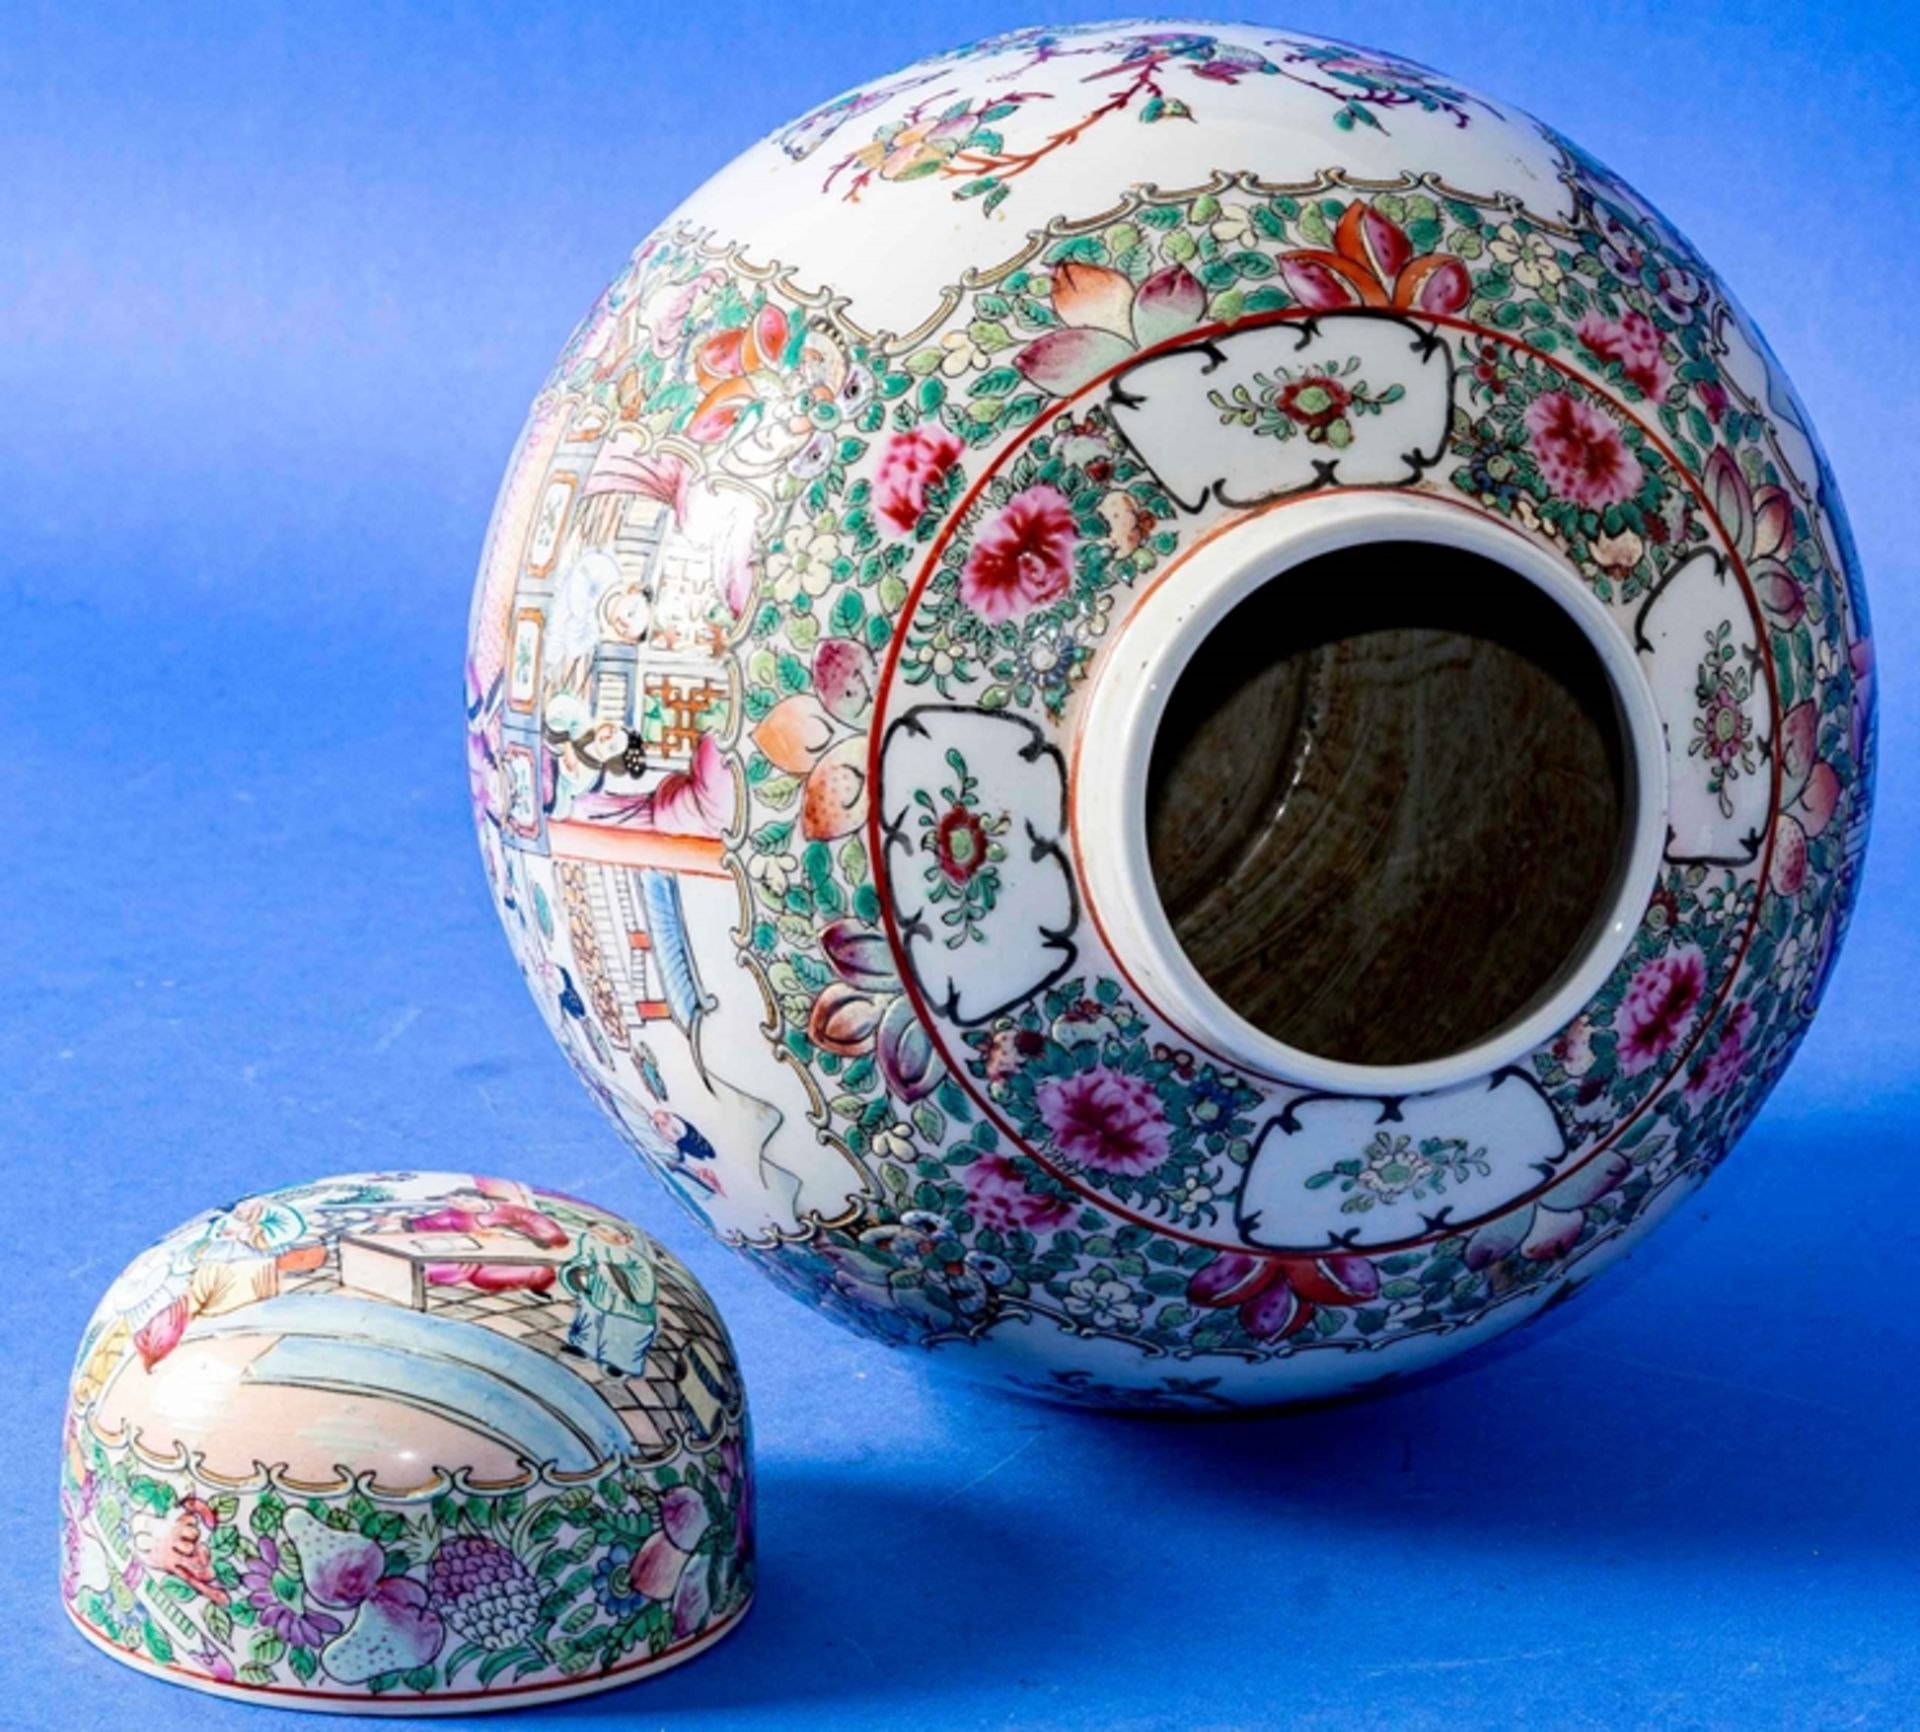 Großer Ingwer Jar, China 20. Jhdt., weißes Porzellan mit aufwändiger Kanton-Emaille-Malerei, Schrif - Bild 6 aus 12